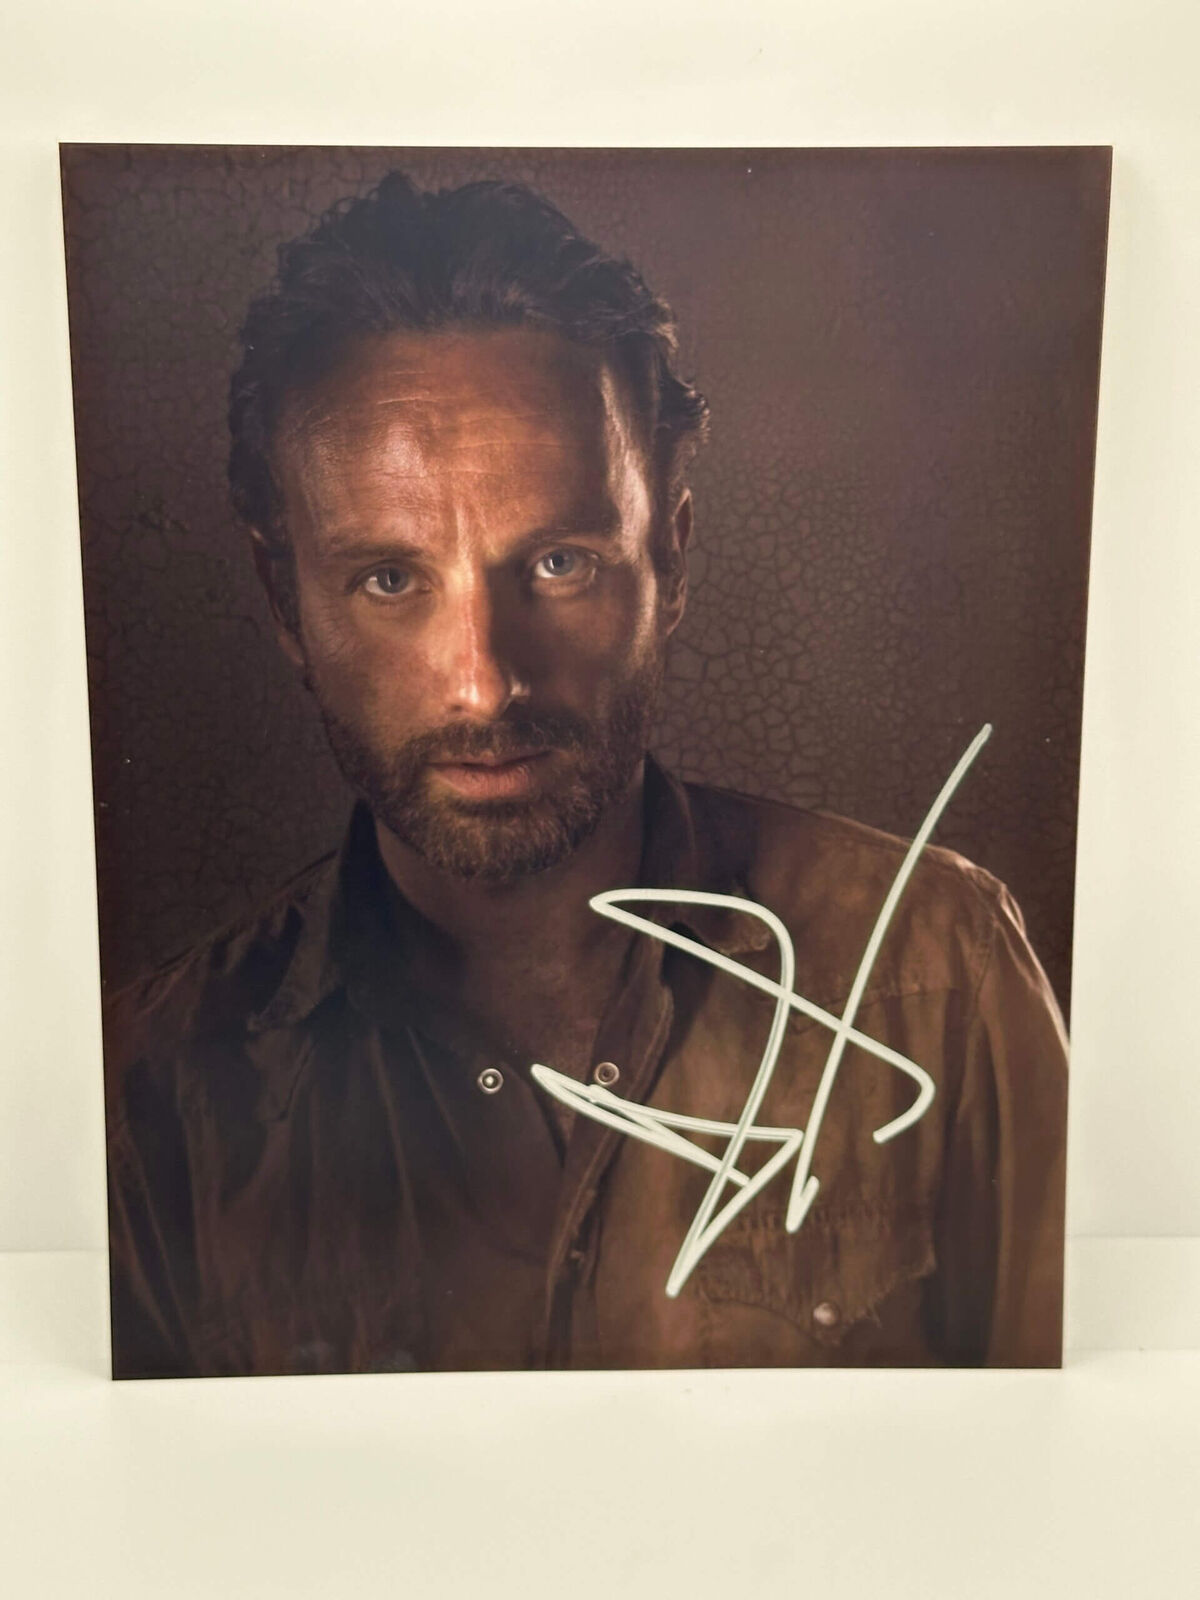 Rick Grimes Walking Dead Signed Autographed Photo Authentic 8X10 COA